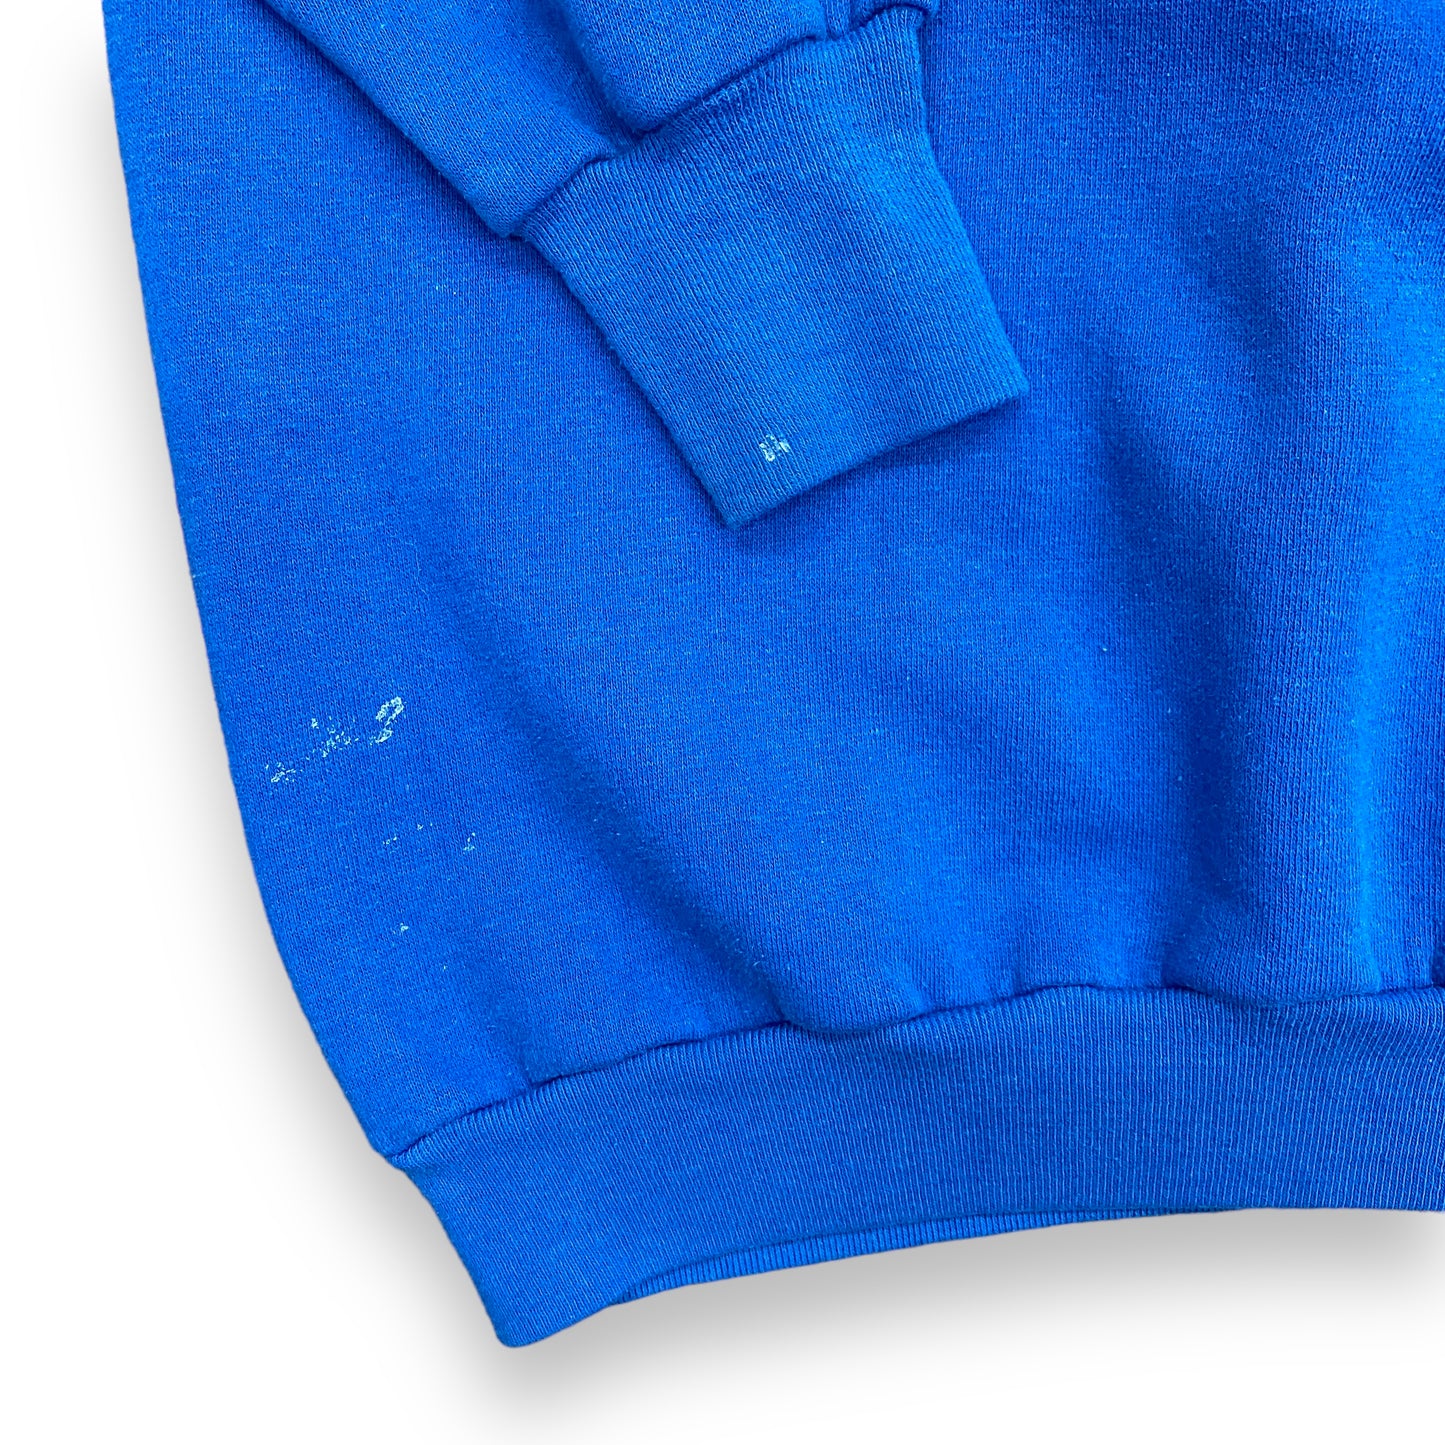 1980s Healthknit Royal Blue Raglan Sweatshirt - Size XL